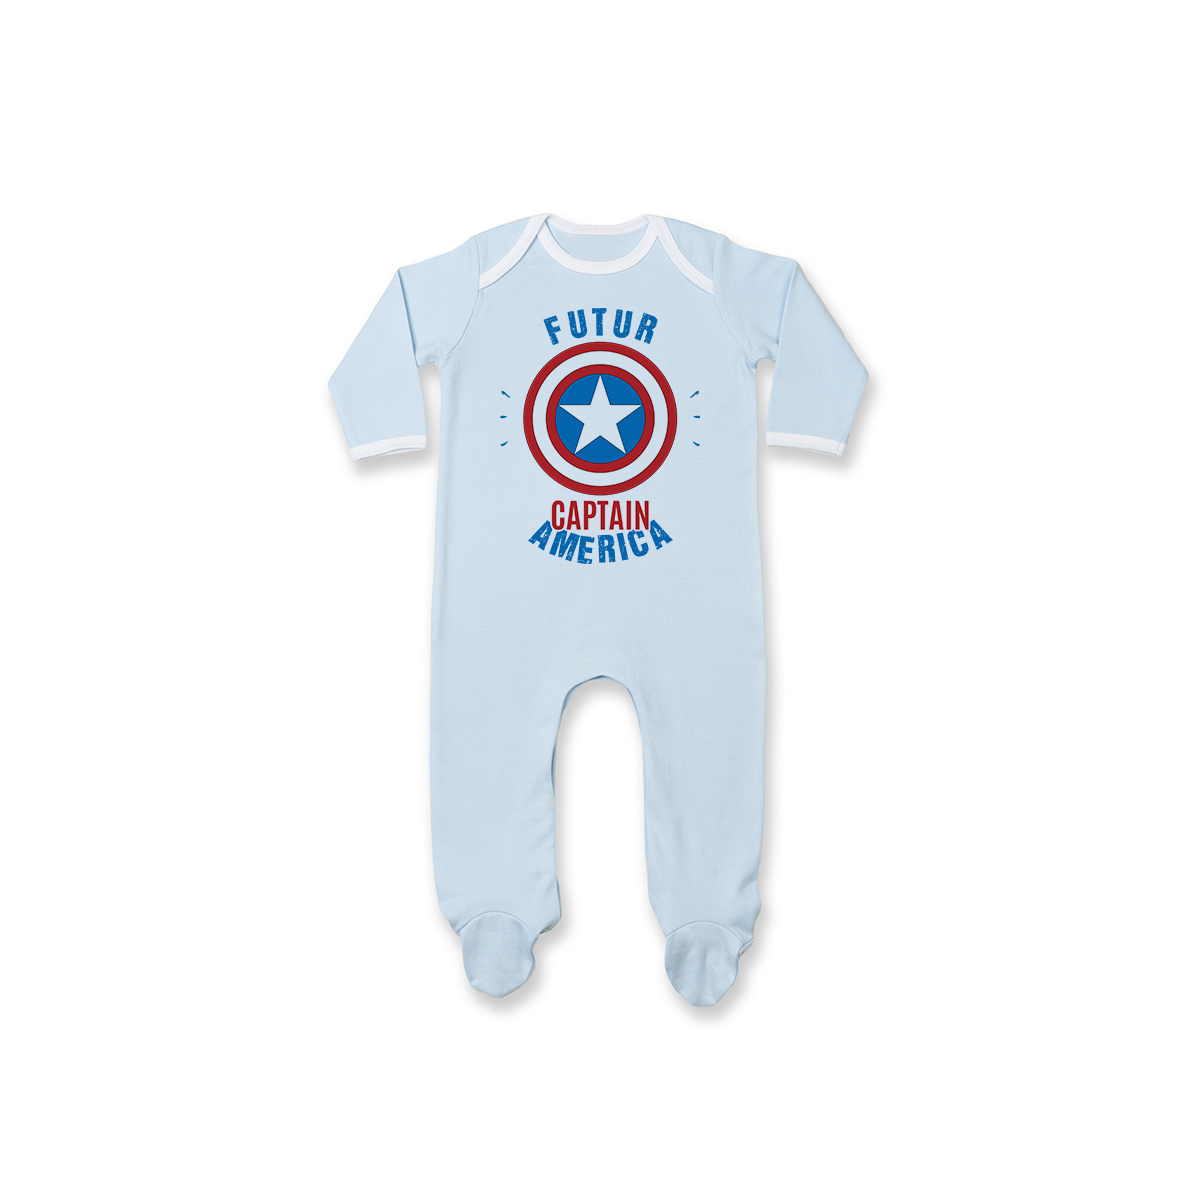 Pyjama bébé Futur Captain America